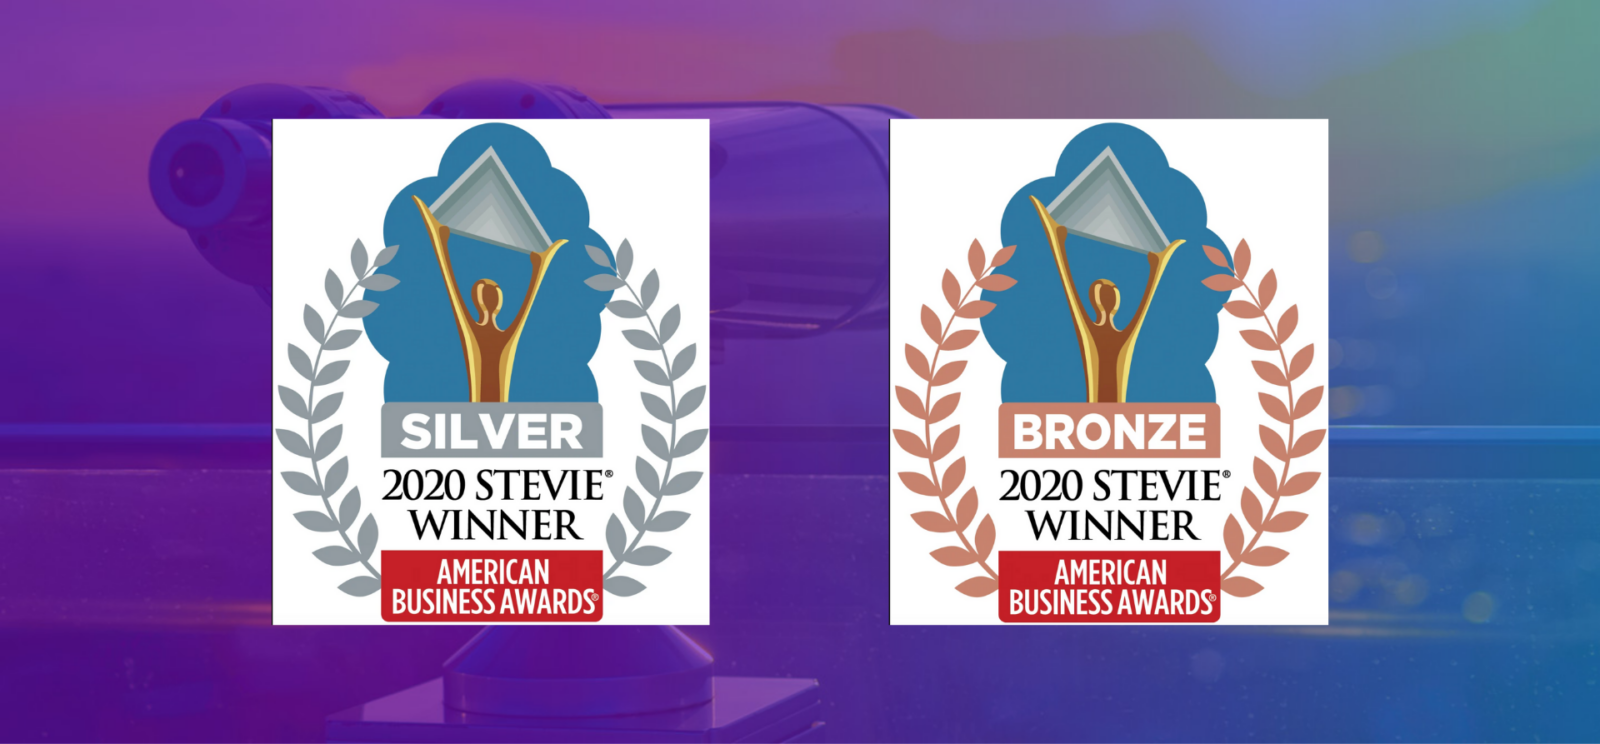 award badges